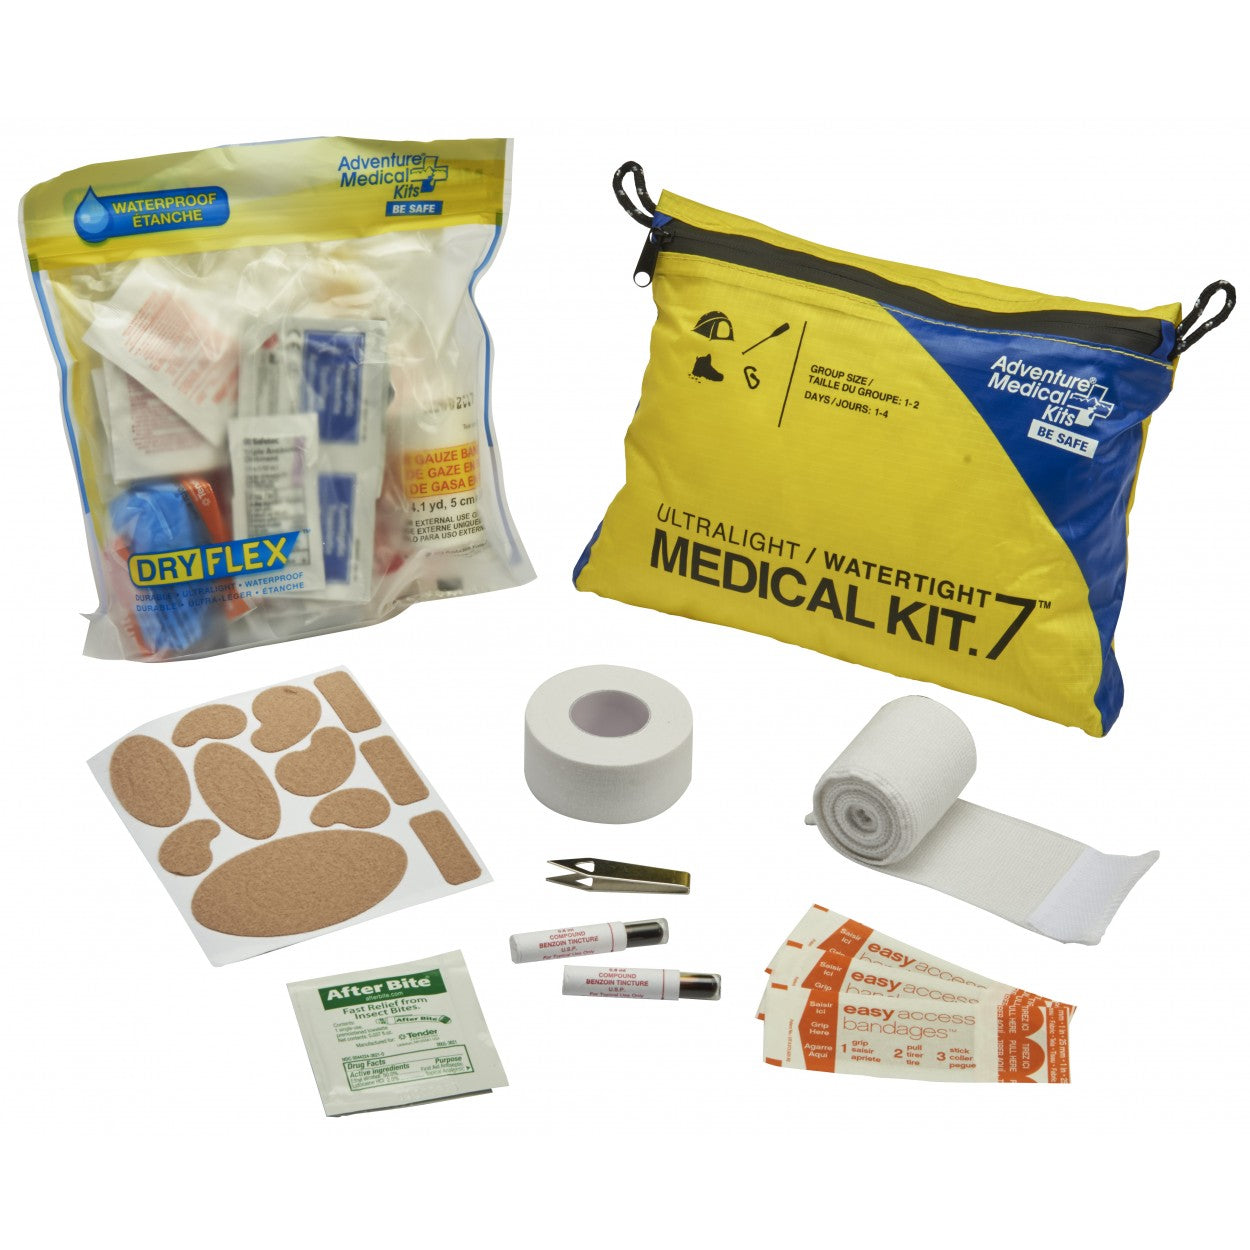 Ultralite .7 Medical Kit